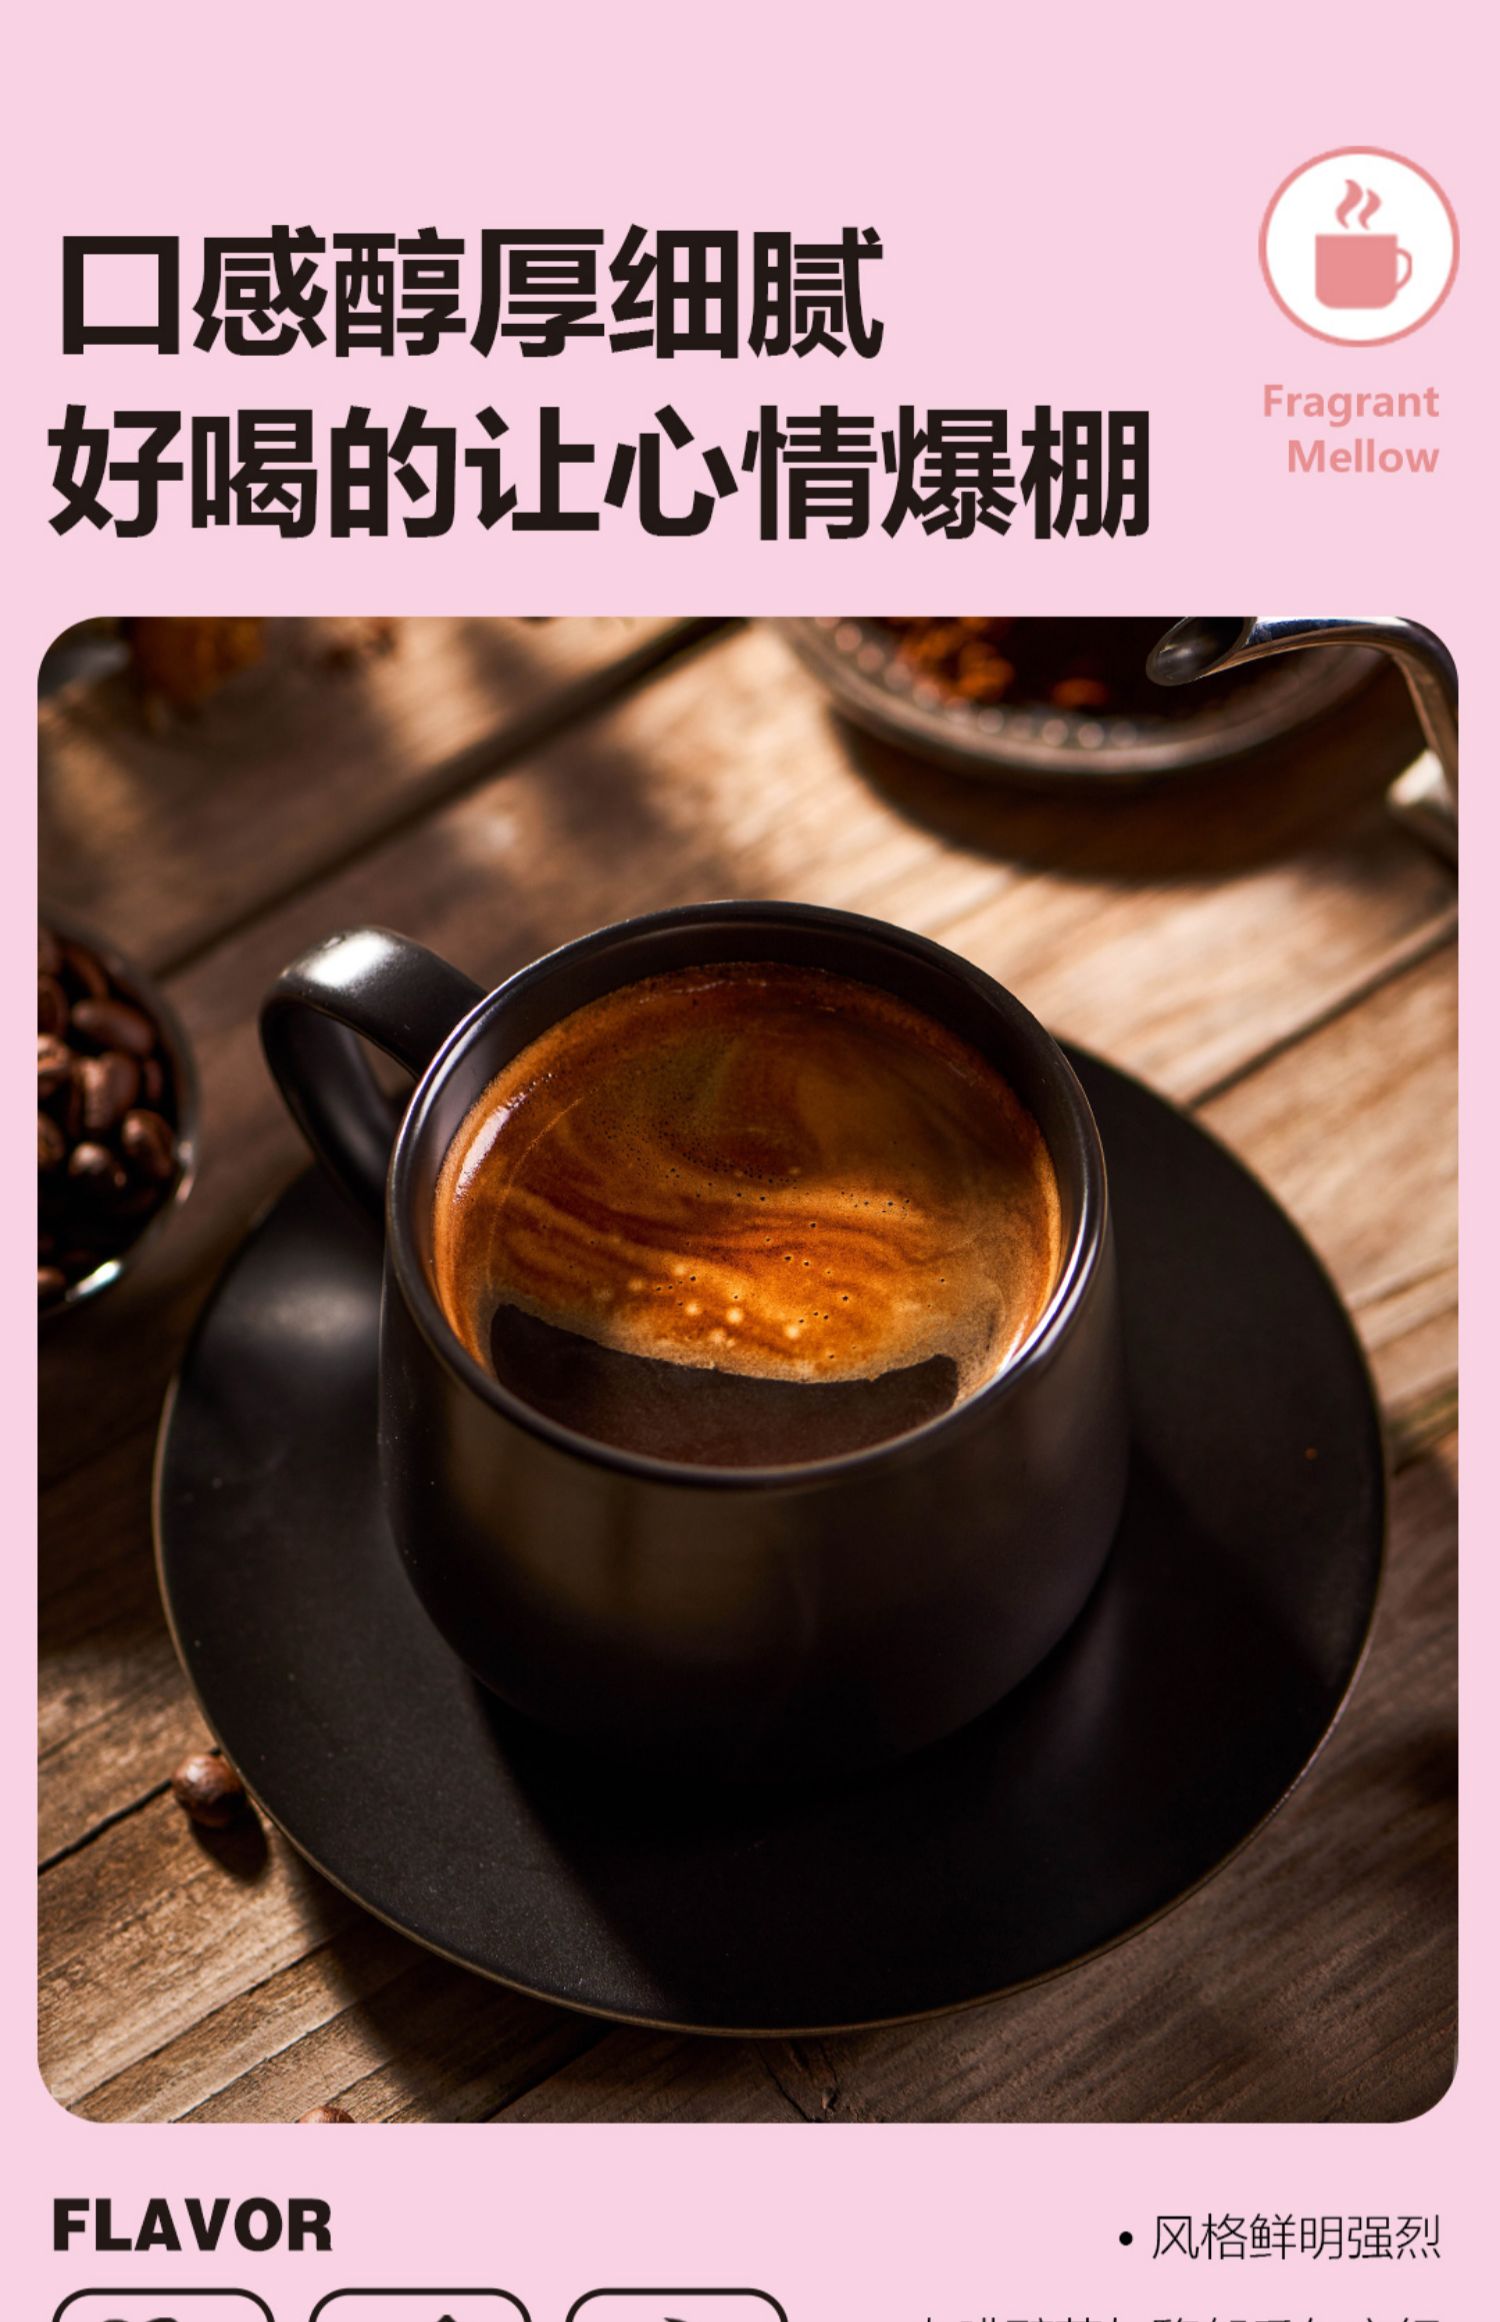 【小黑盒礼金】景兰白芸豆蓝山黑咖啡